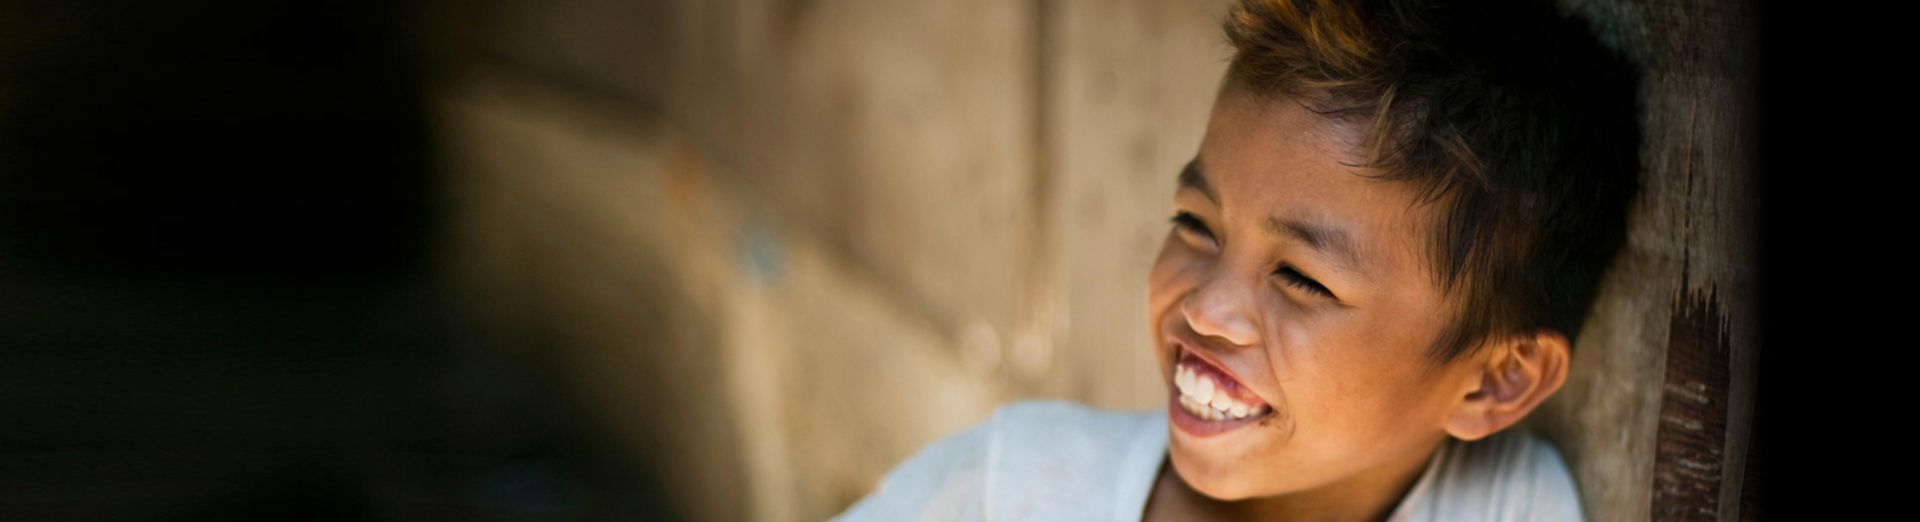 menino sorrindo representando as soluções SAP para sustentabilidade